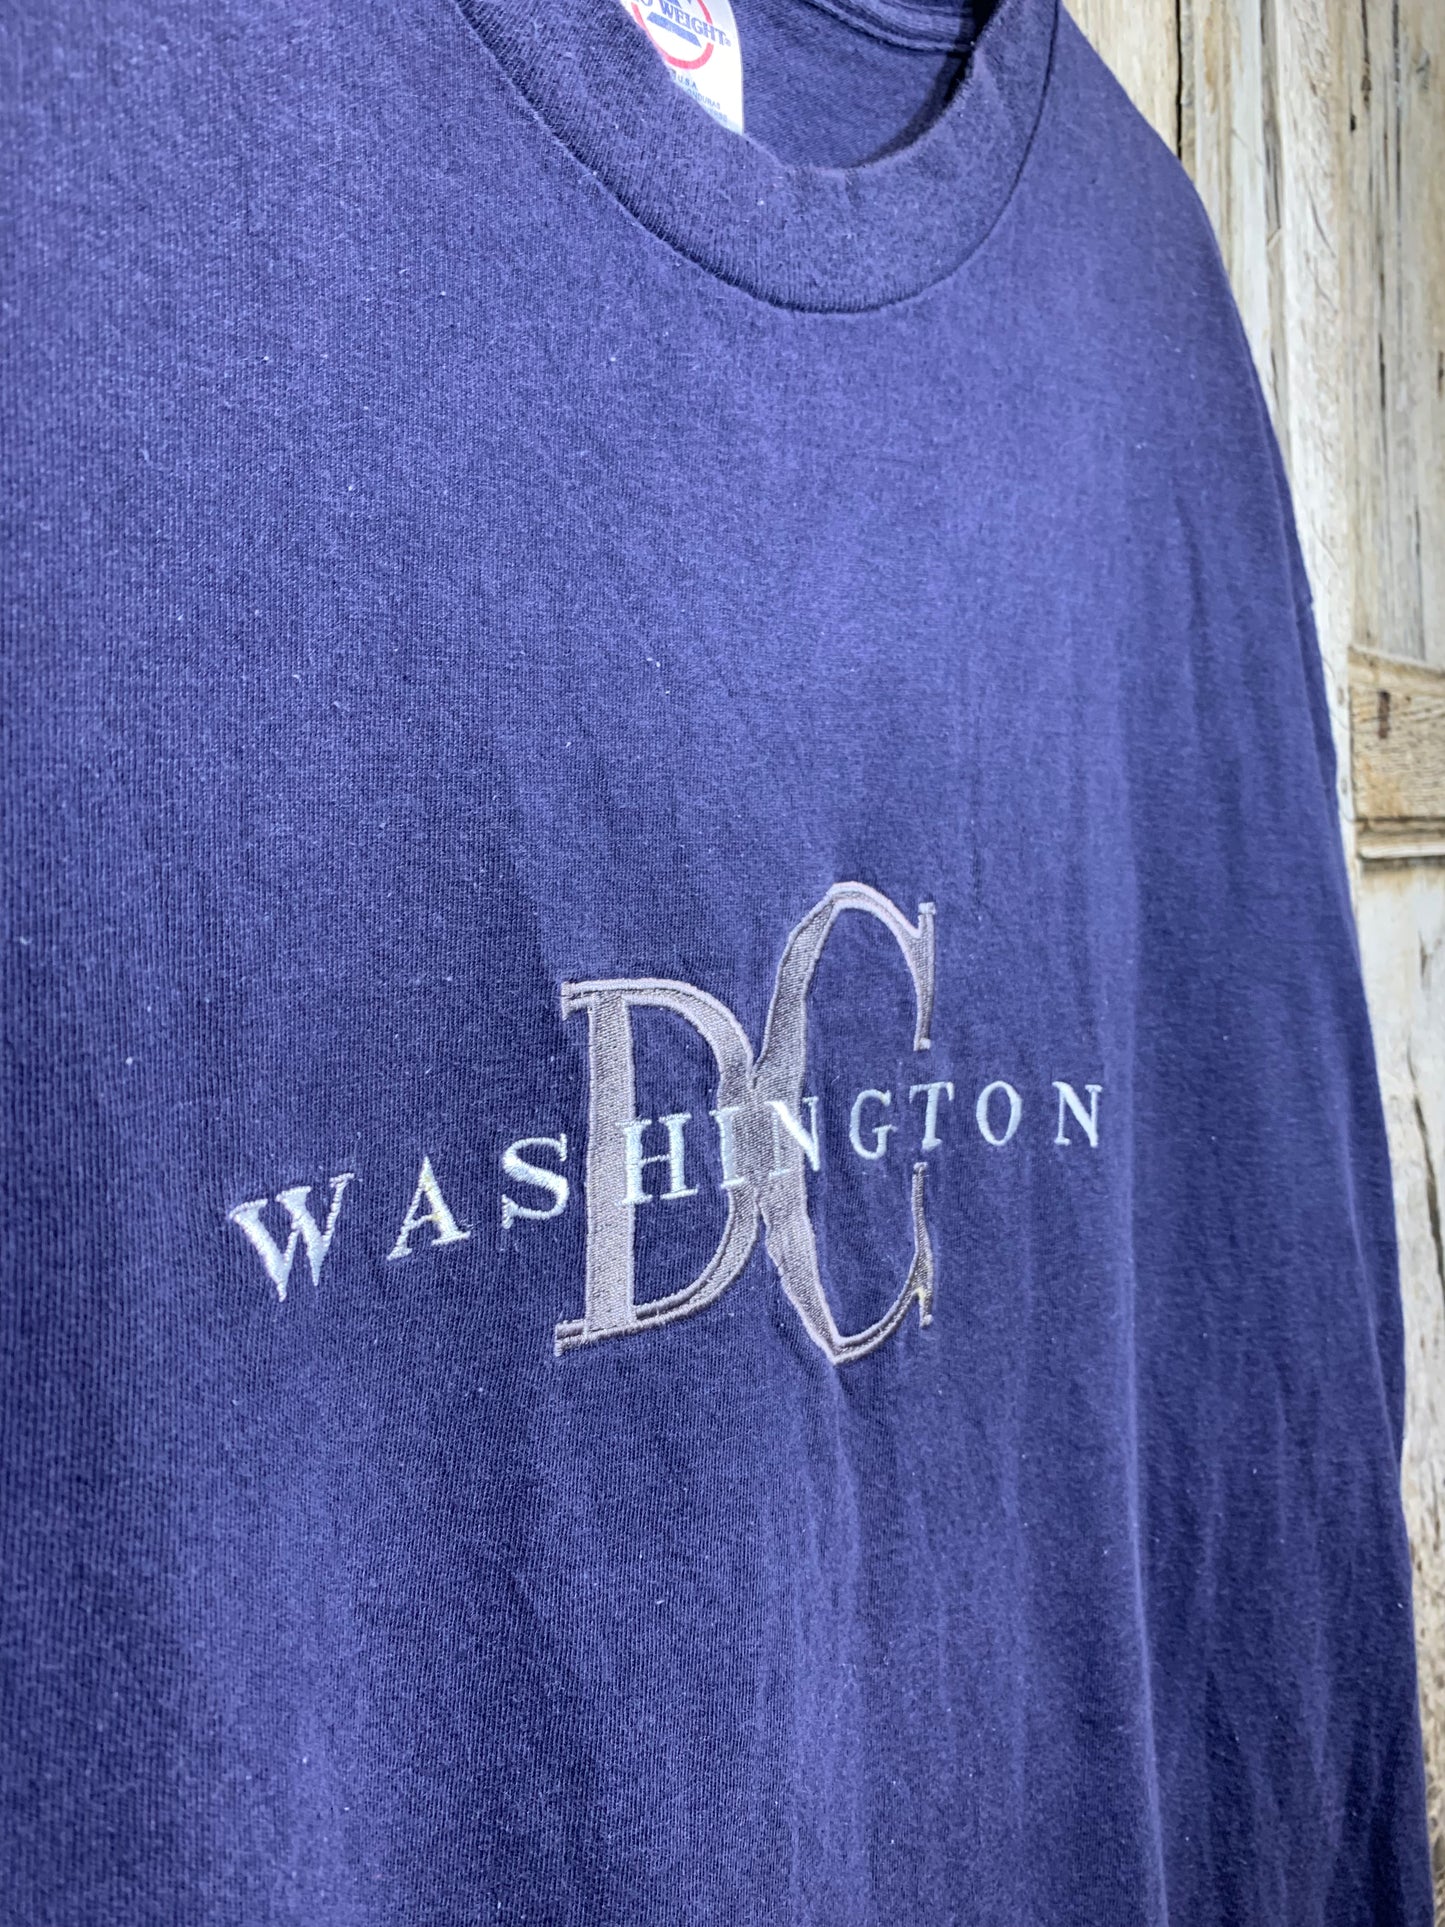 Vintage Washington D.C Embroidered Tee